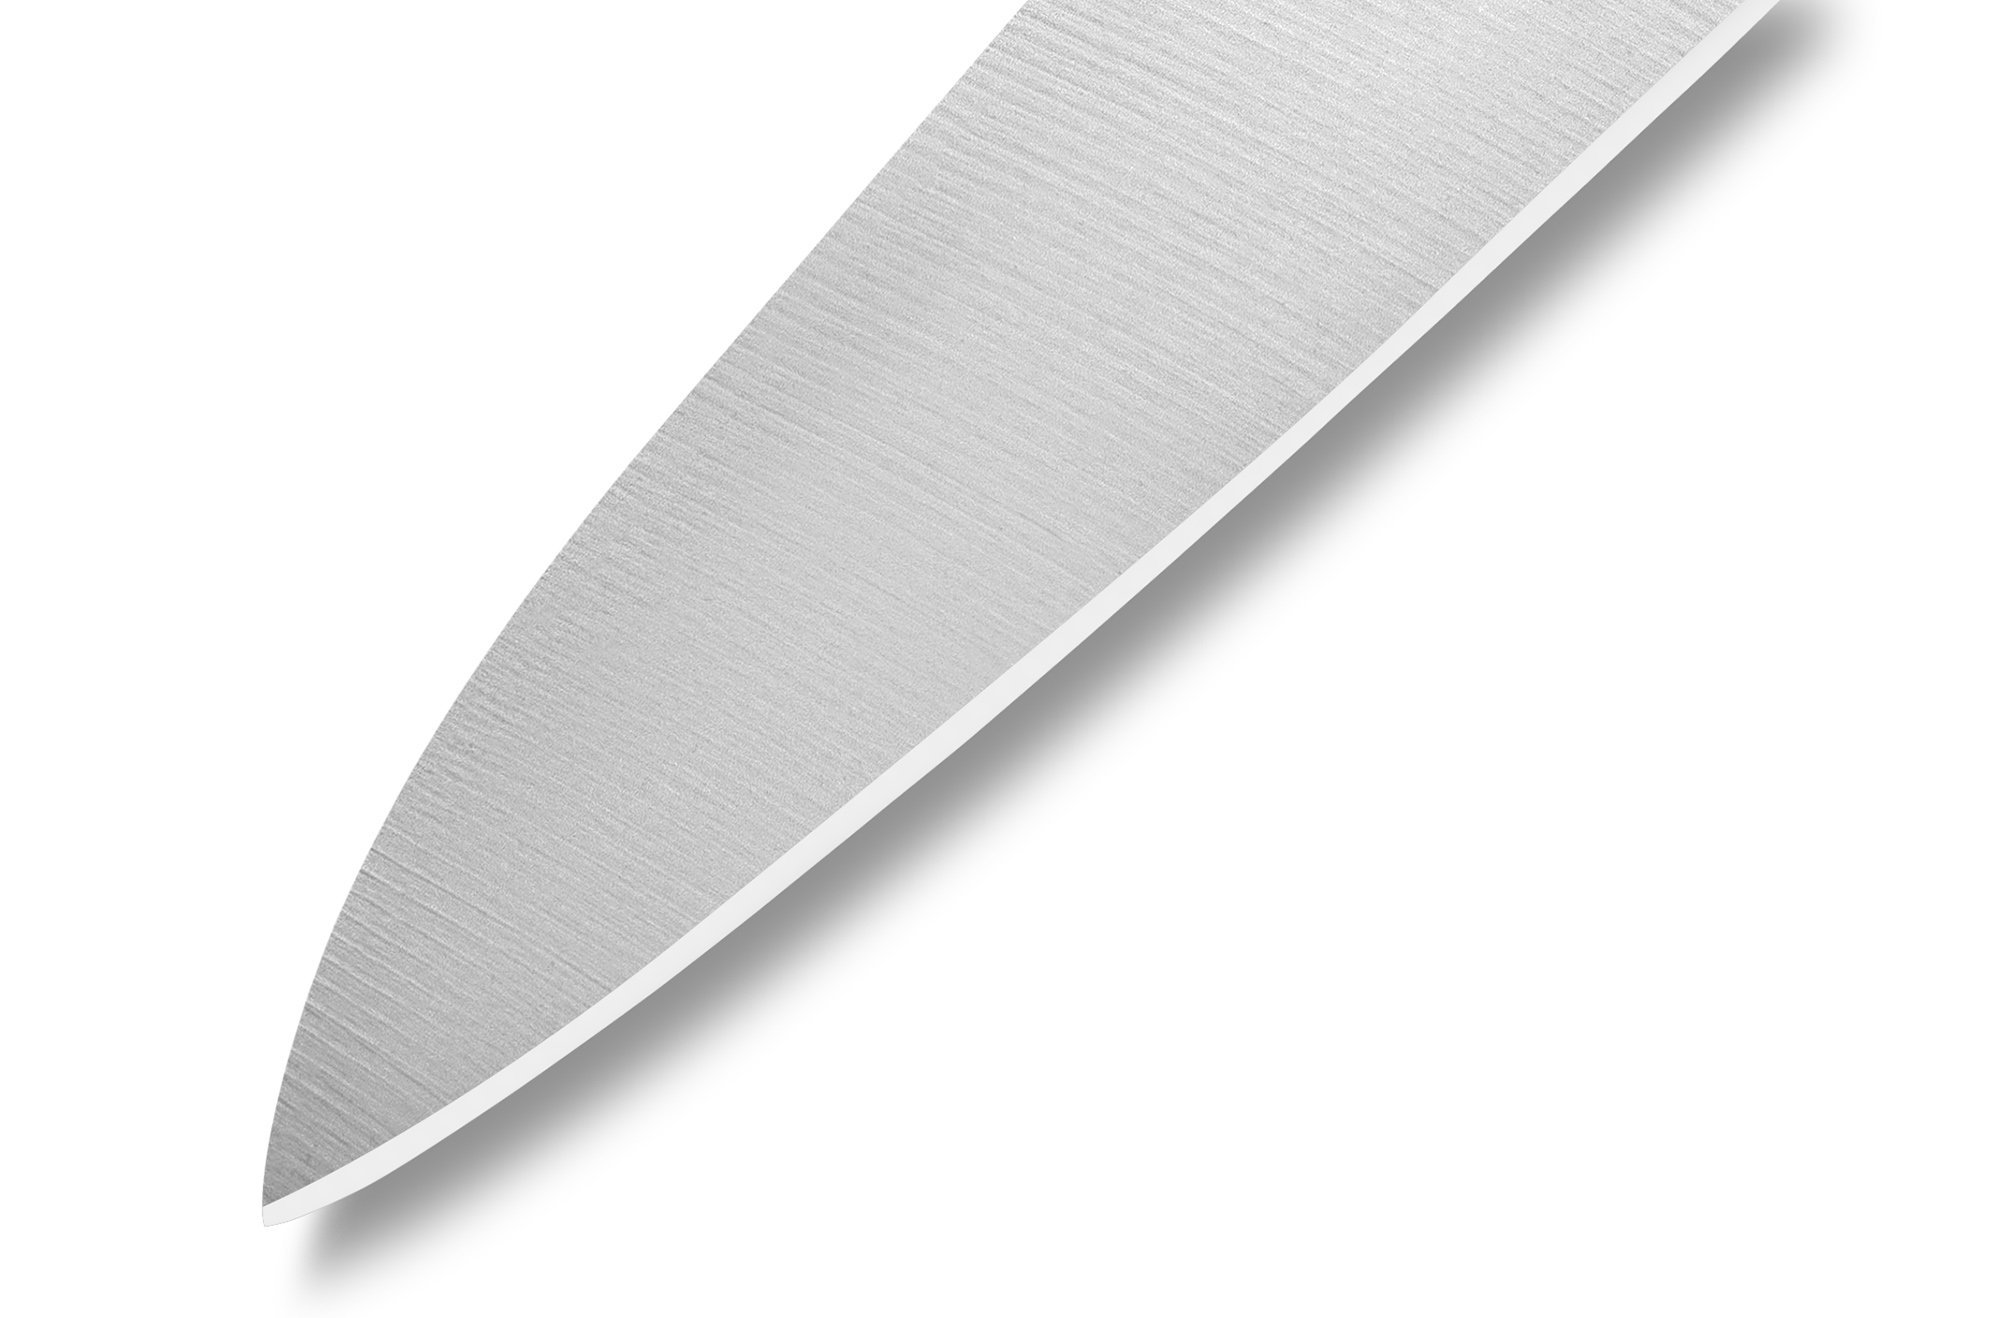 Нож кухонный для нарезки Samura GOLF - SG-0045, сталь AUS-8, рукоять полипропилен, 251 мм от Ножиков